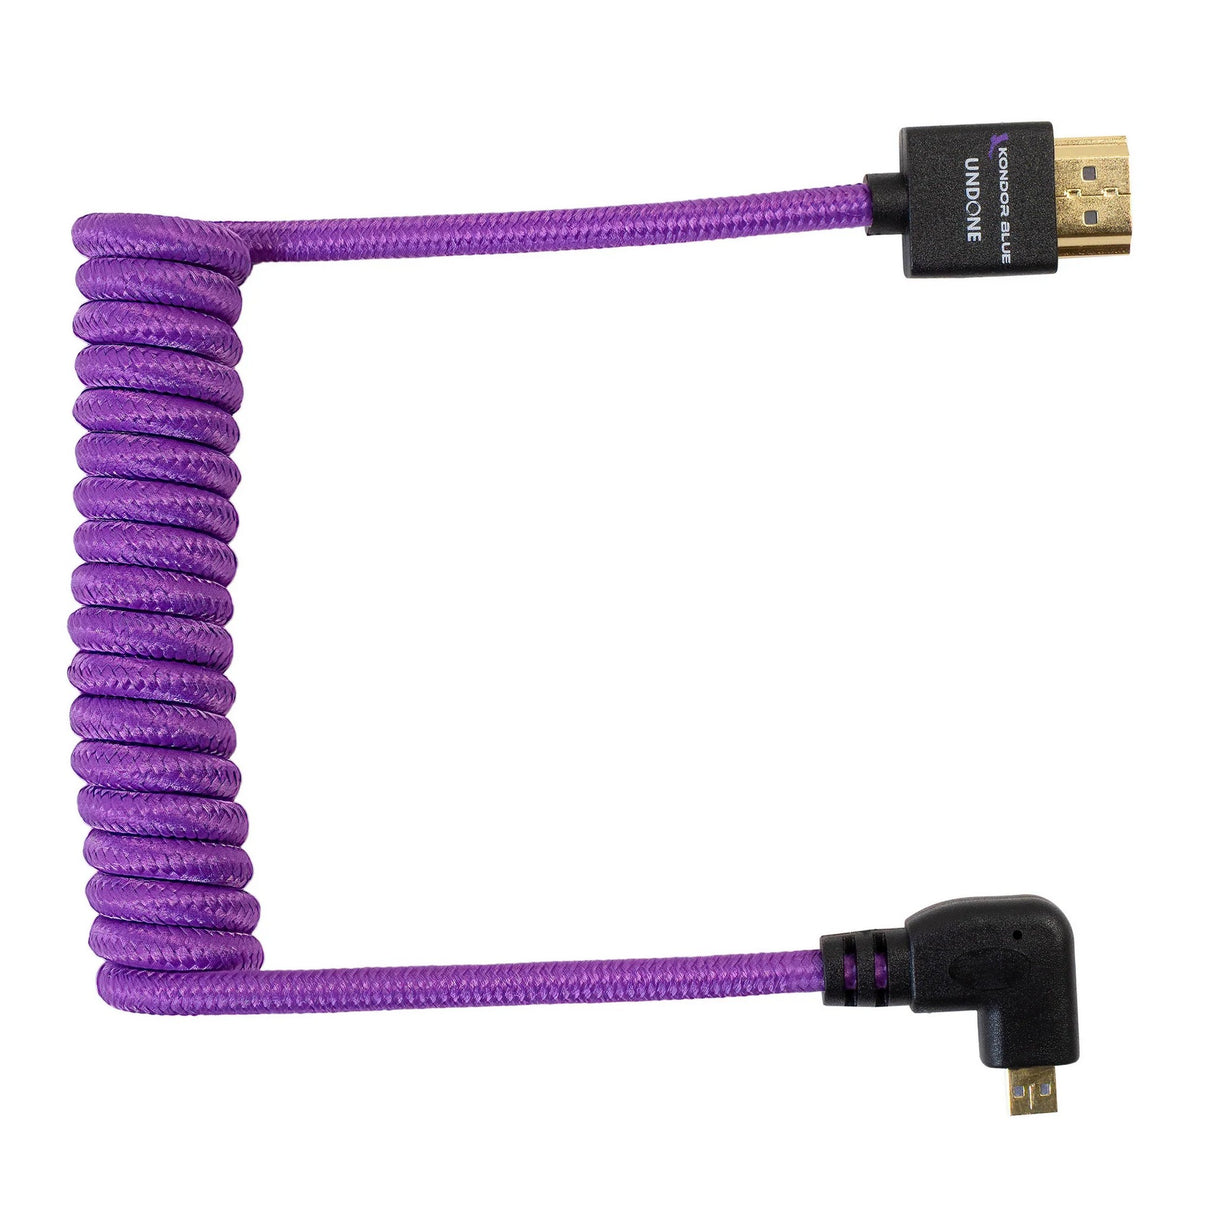 Kondor Blue Gerald Undone MK2 Full HDMI to Right Angle Micro HDMI Cable 12-24-Inch Coiled, Purple, Right Angle, R5/R6